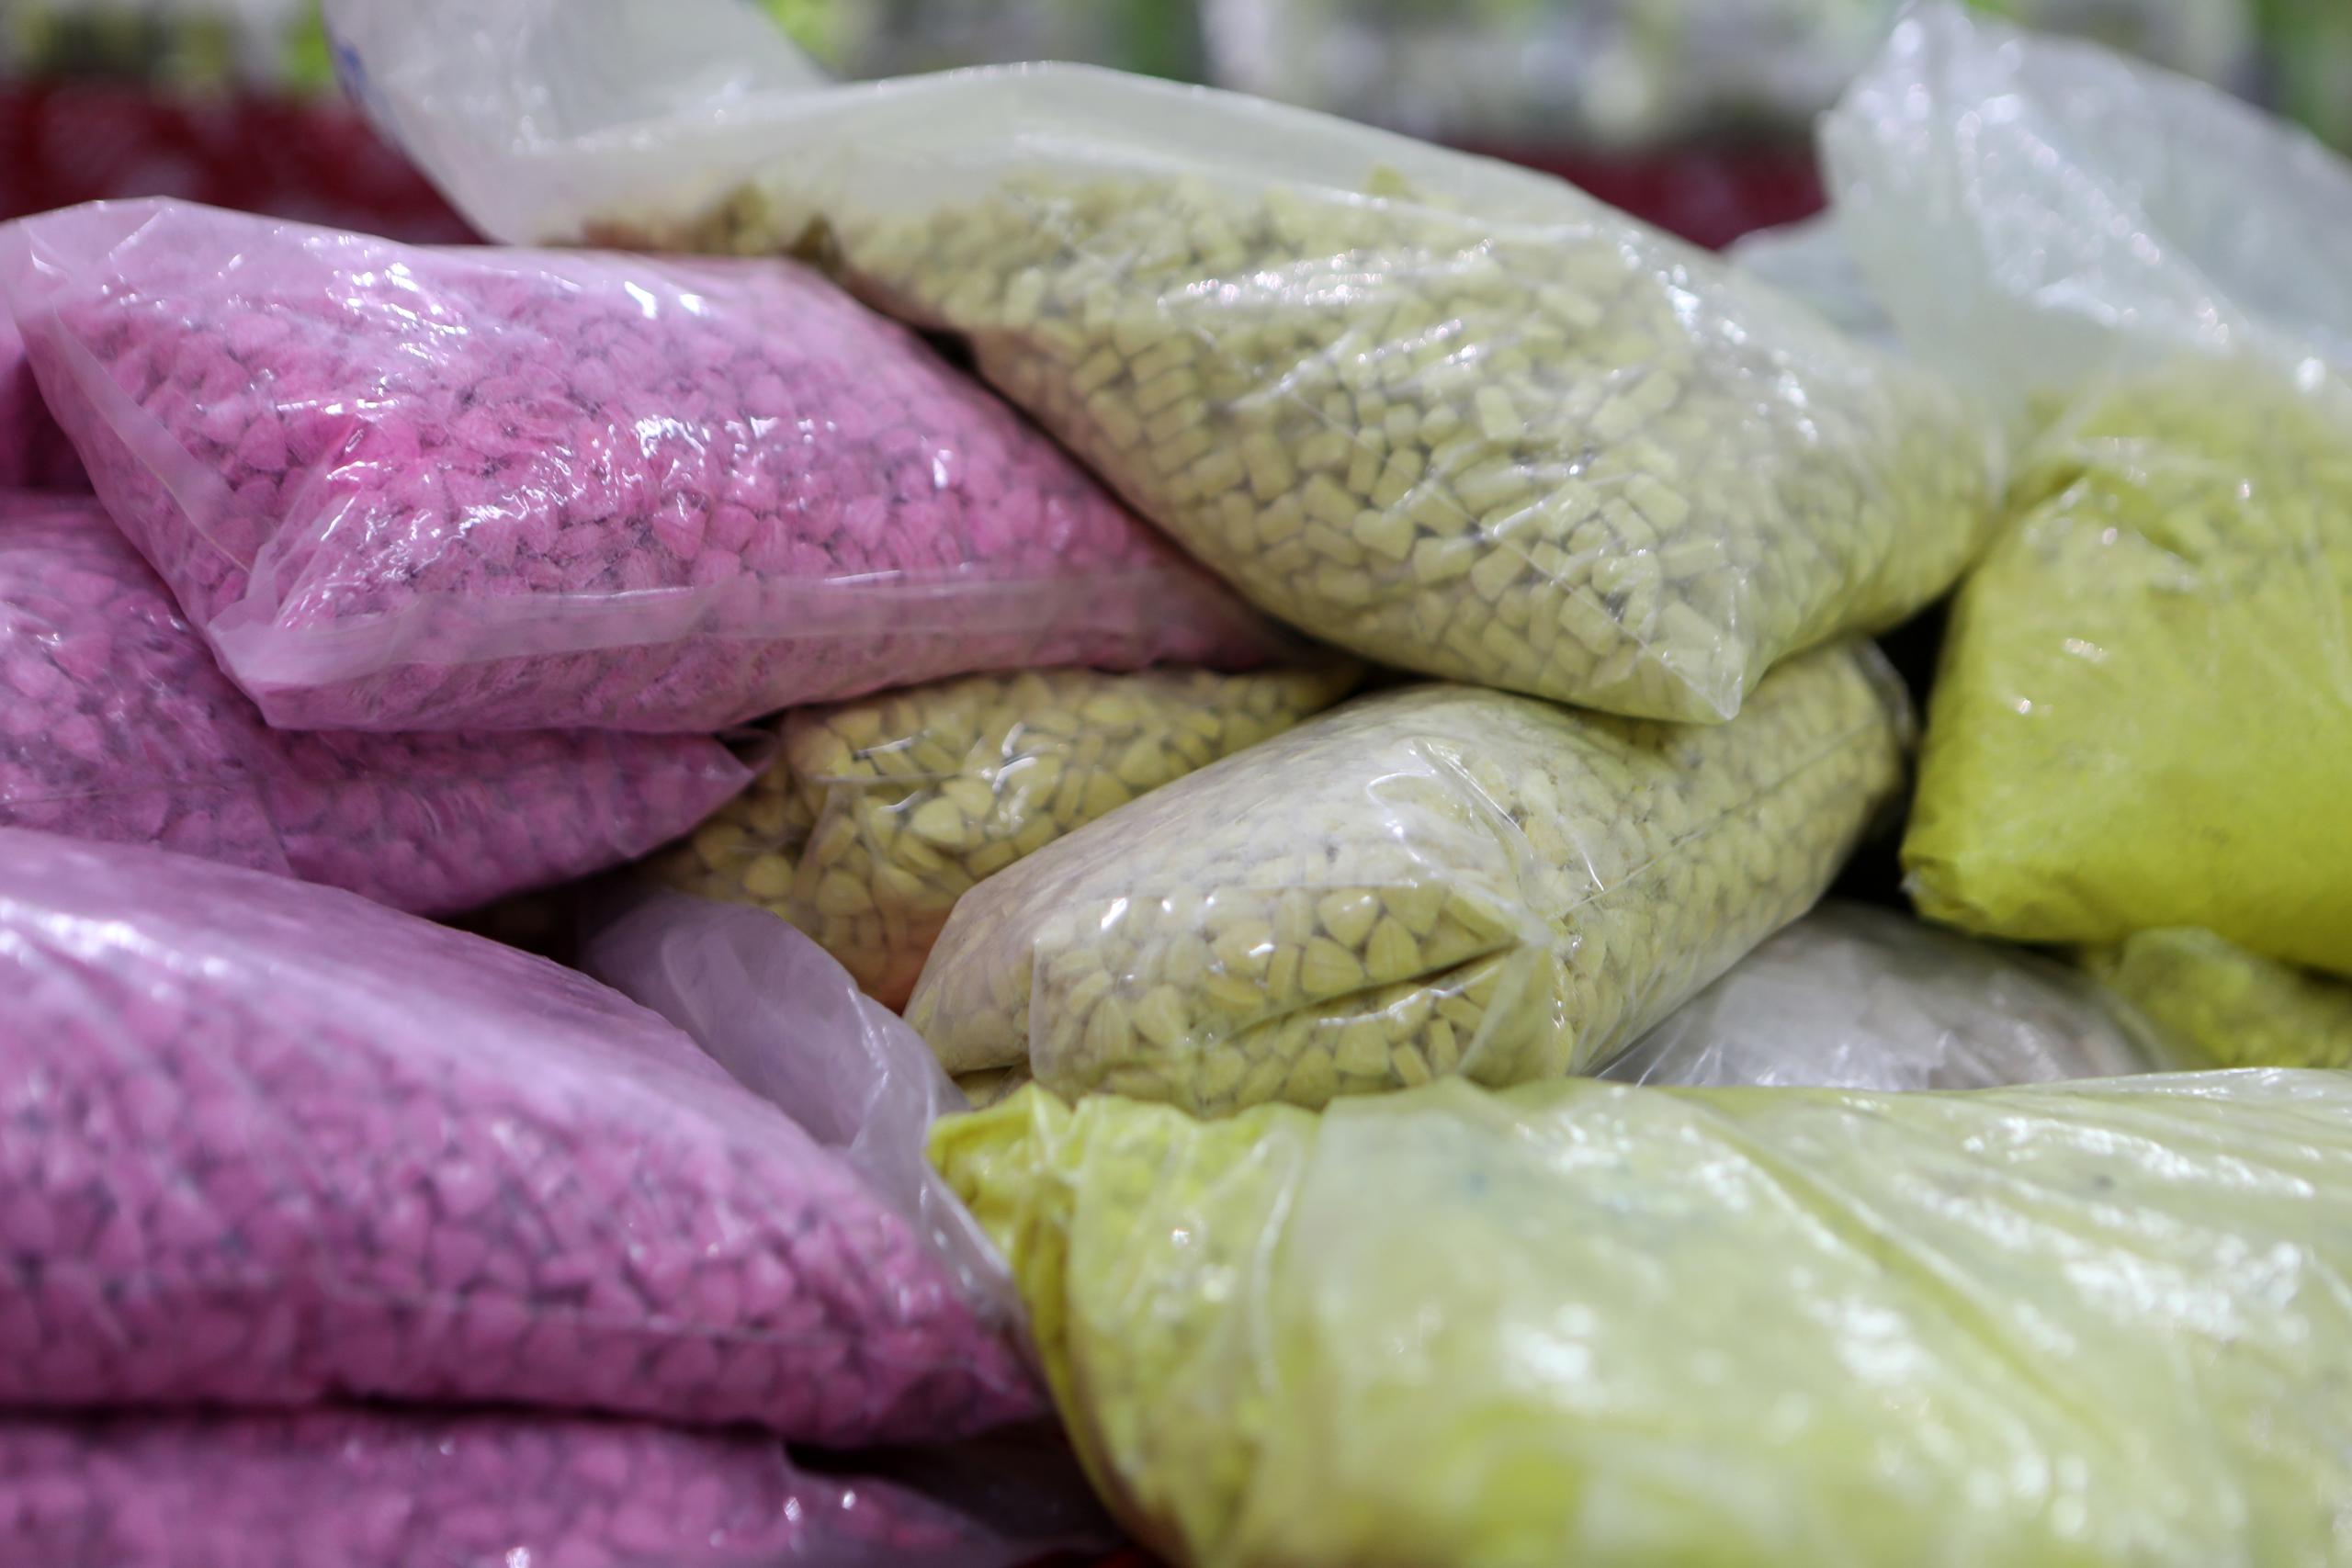 “Estas pastillas parecen inocuas pero pueden ser mortales”, dijo Mike Nordwall, agente especial de la Oficina Federal de Investigaciones (FBI) en Pittsburgh, sobre las píldoras que parecen dulces, pero son el mayor causante de muertes en Estados Unidos.